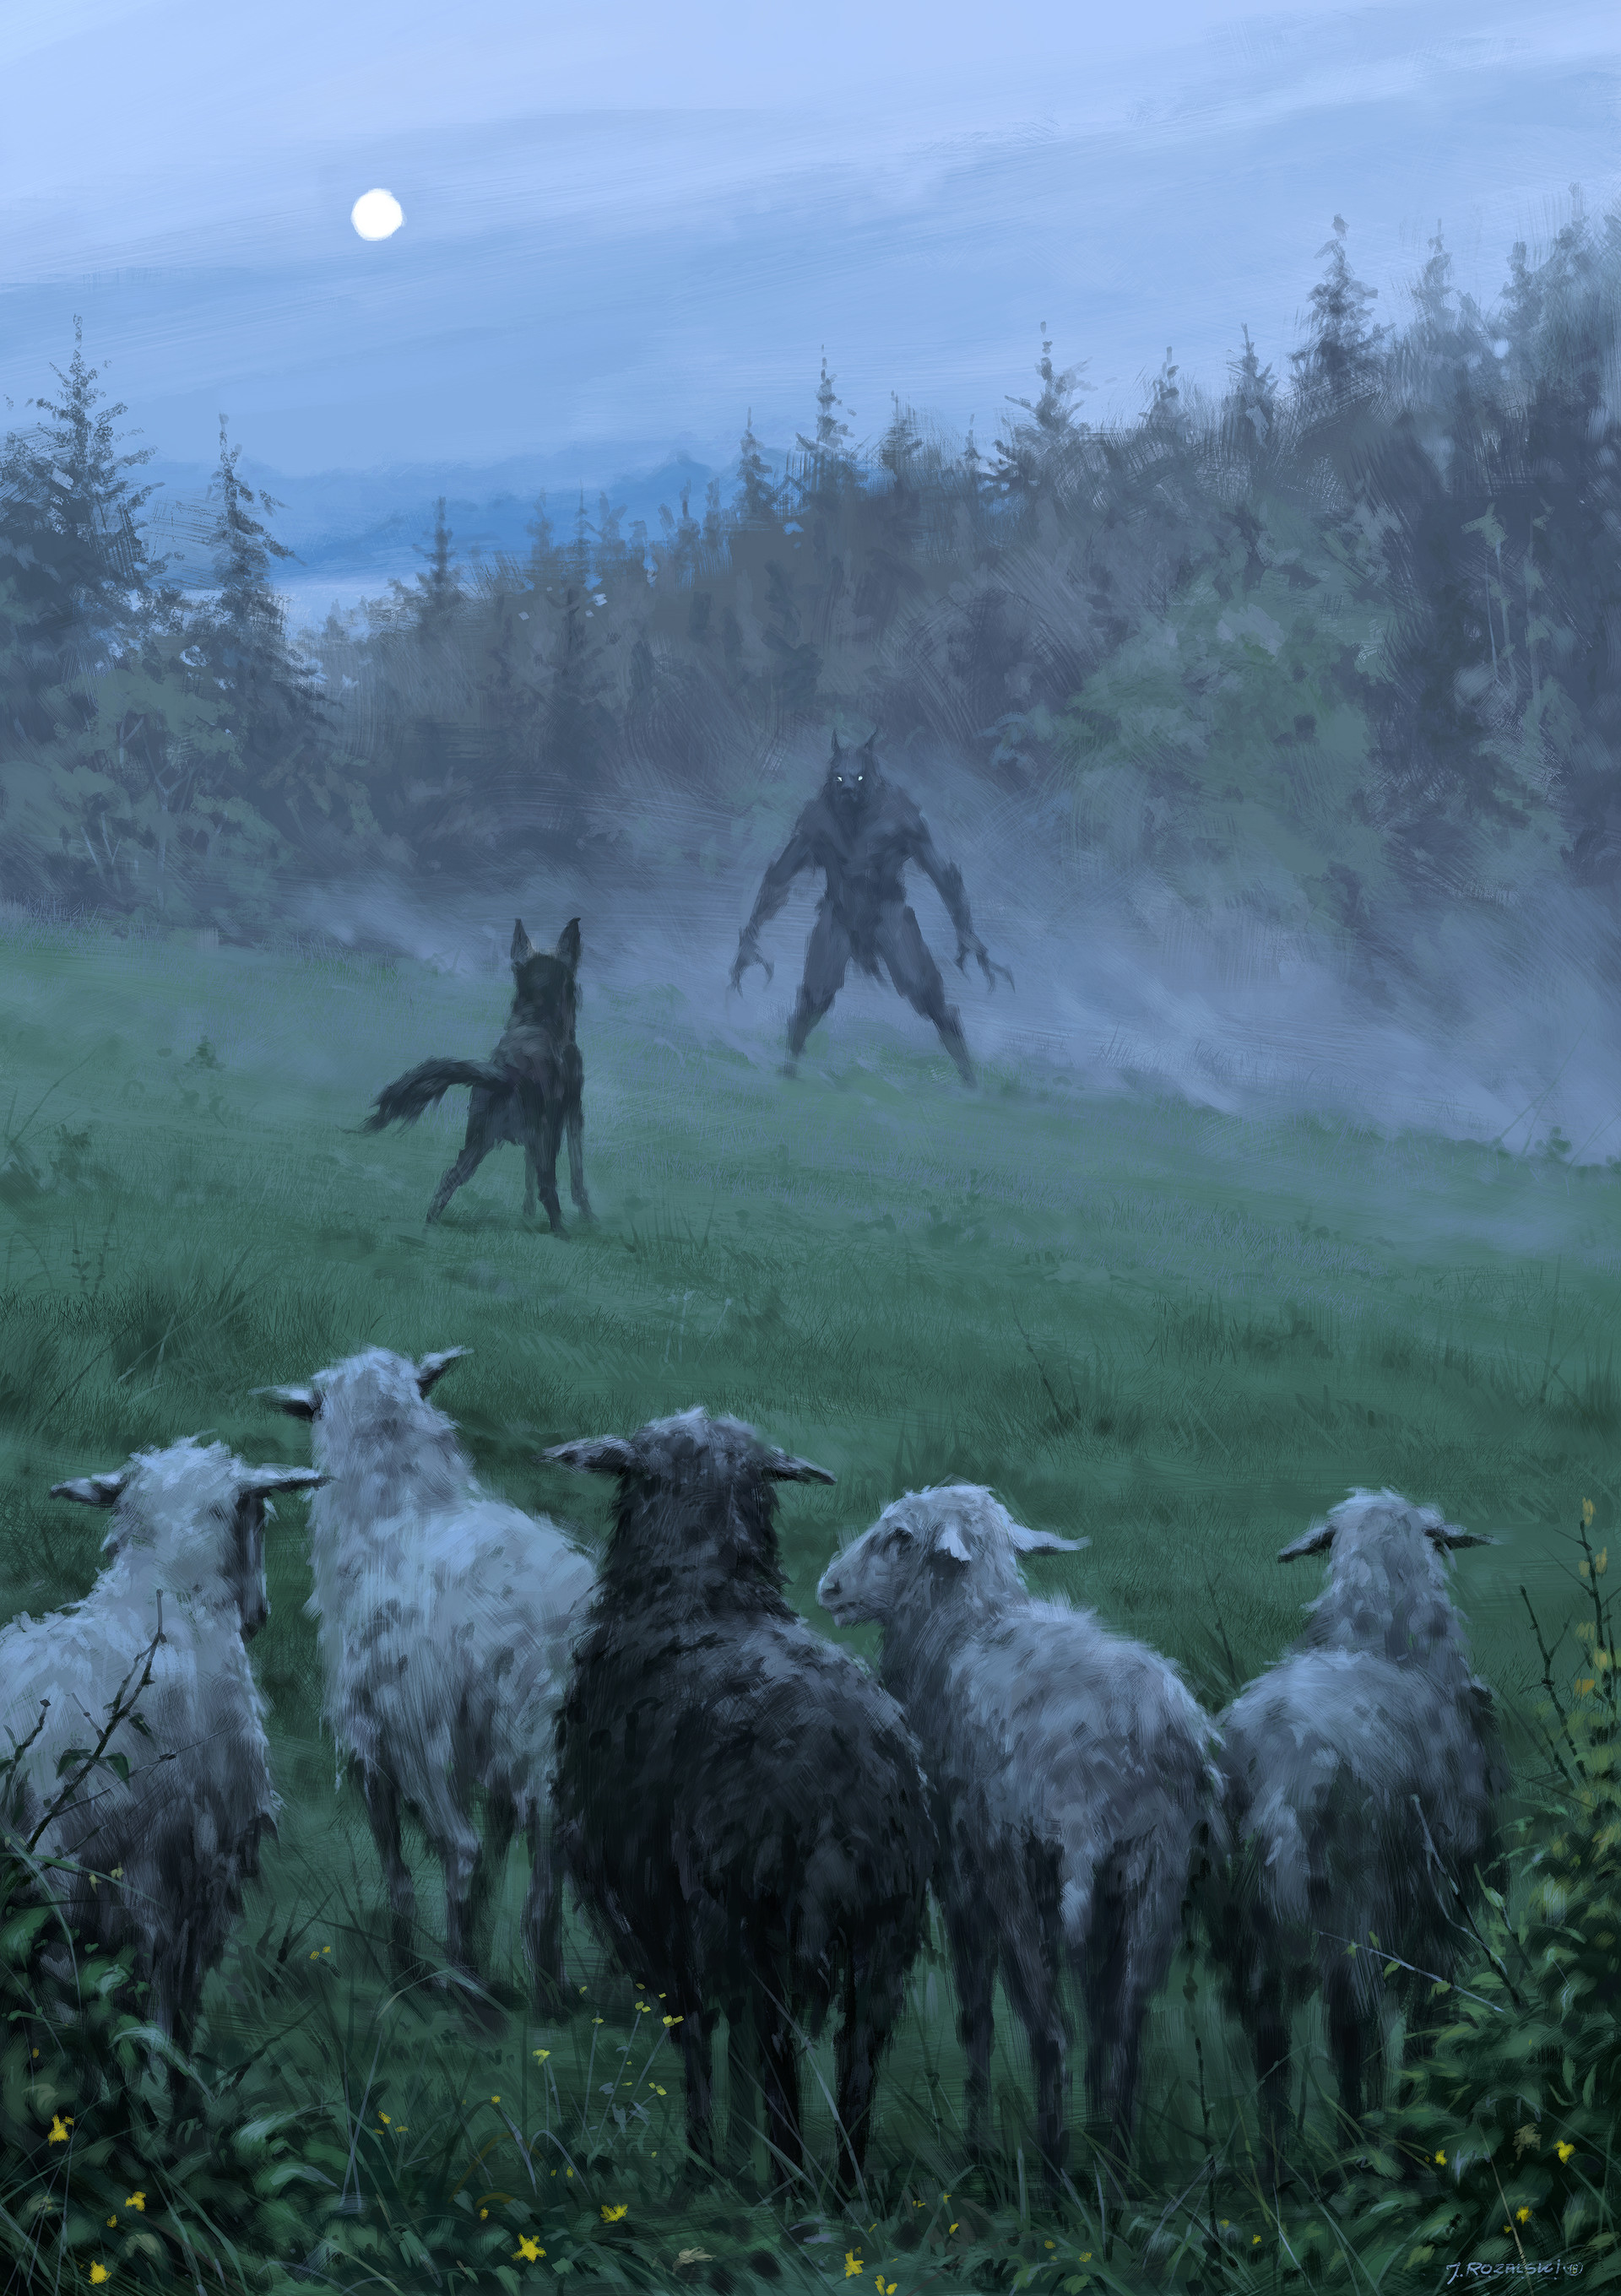 General 1920x2720 Jakub Różalski artwork werewolves Anthro creature dog sheep animals mammals fantasy art